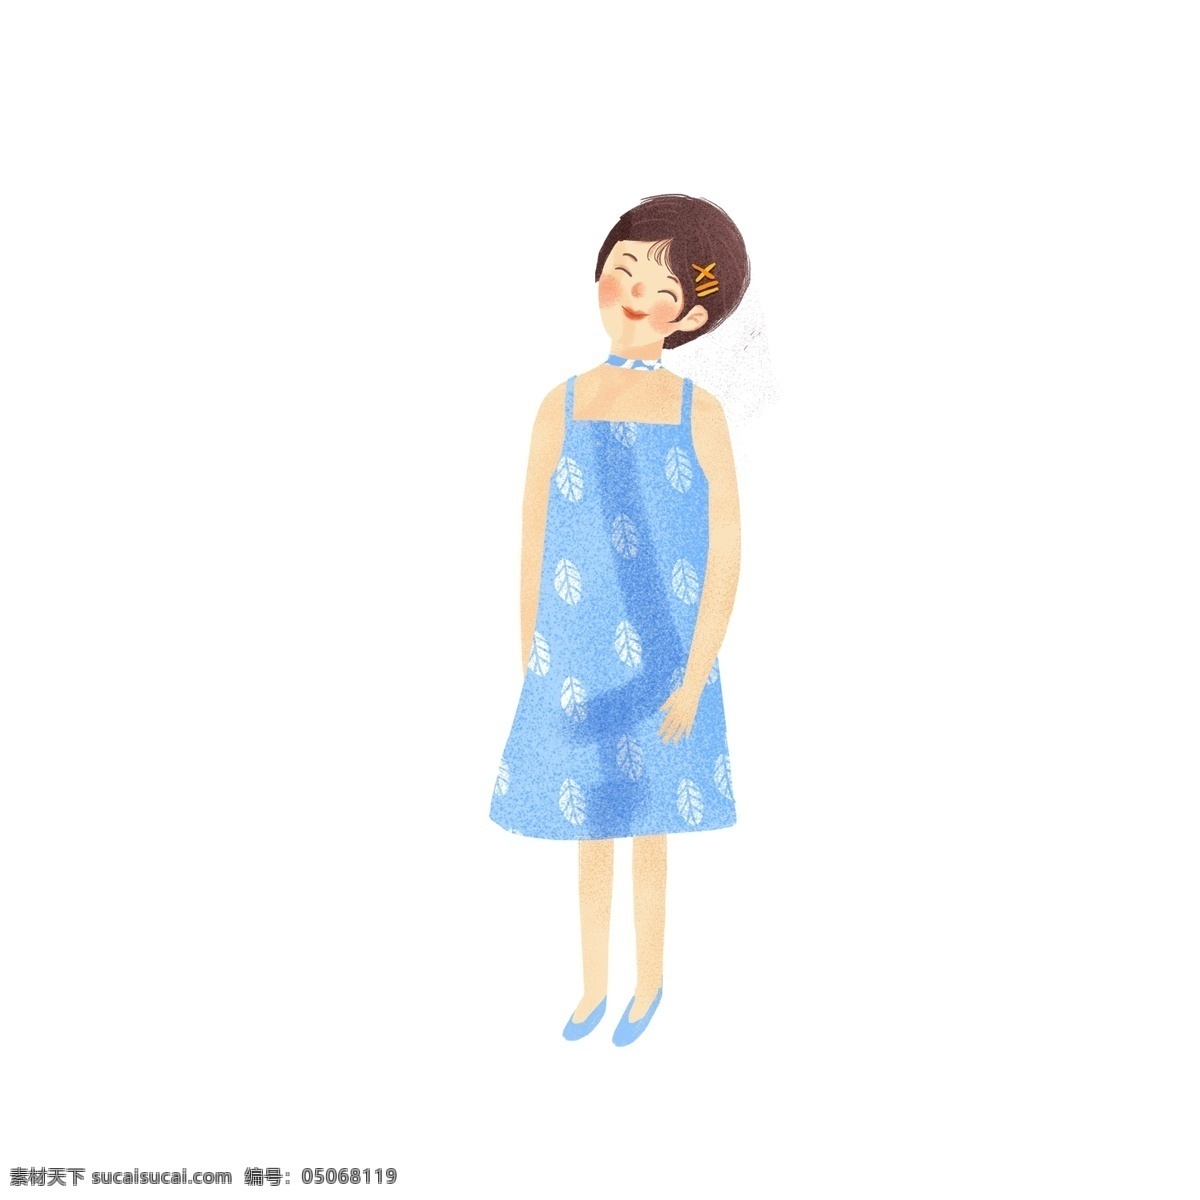 原创 文艺 短发 女孩 元素 创意 卡通 图案元素 蓝裙子